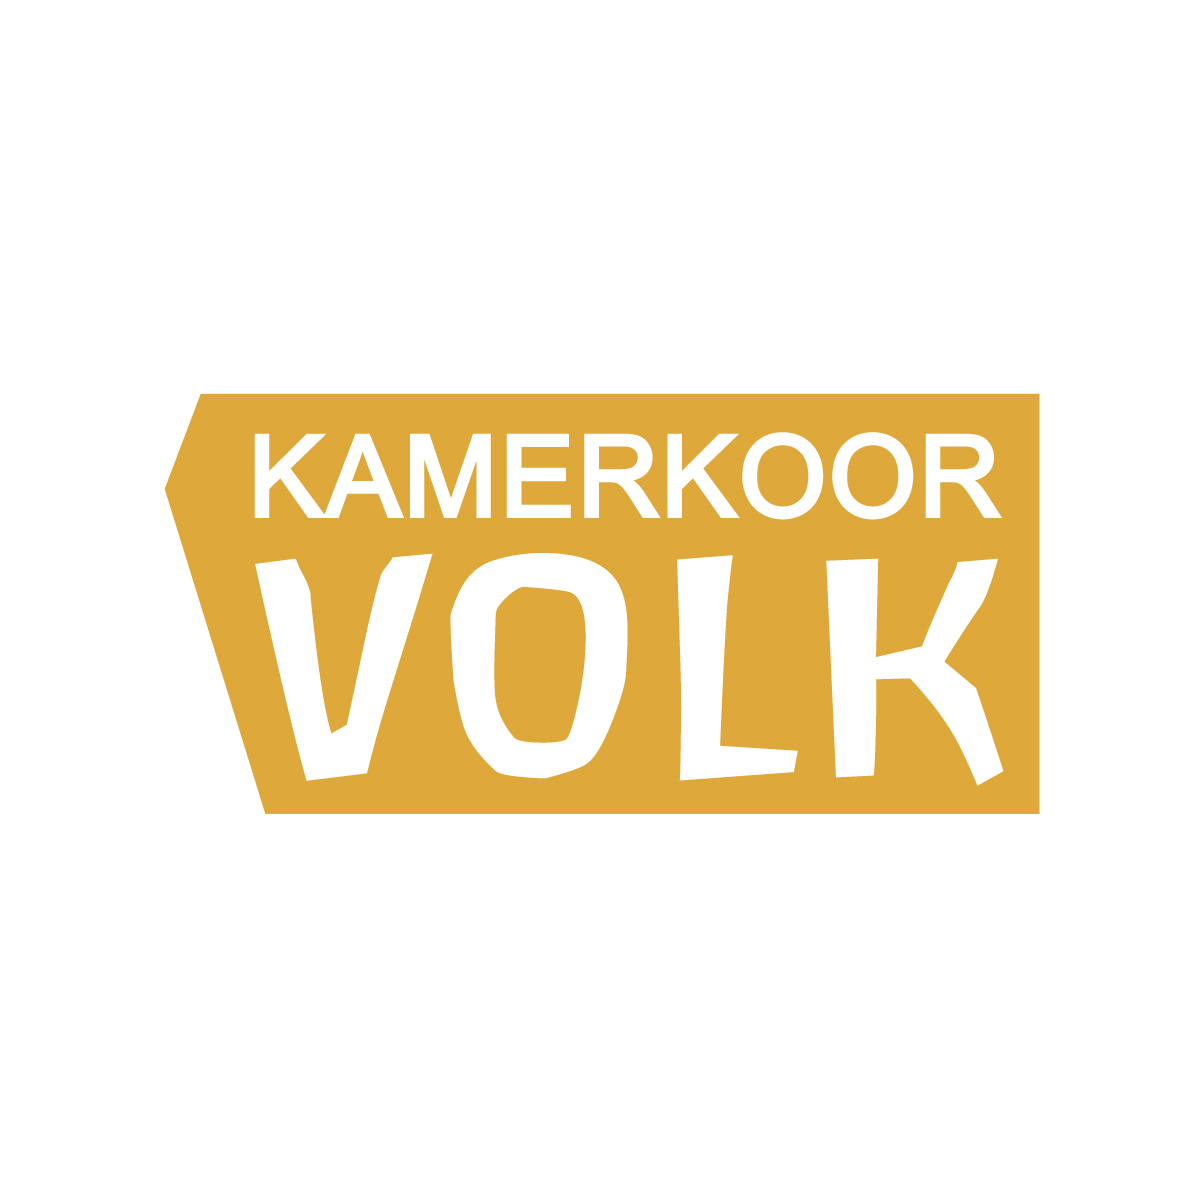 Kamerkoor Volk - Logo